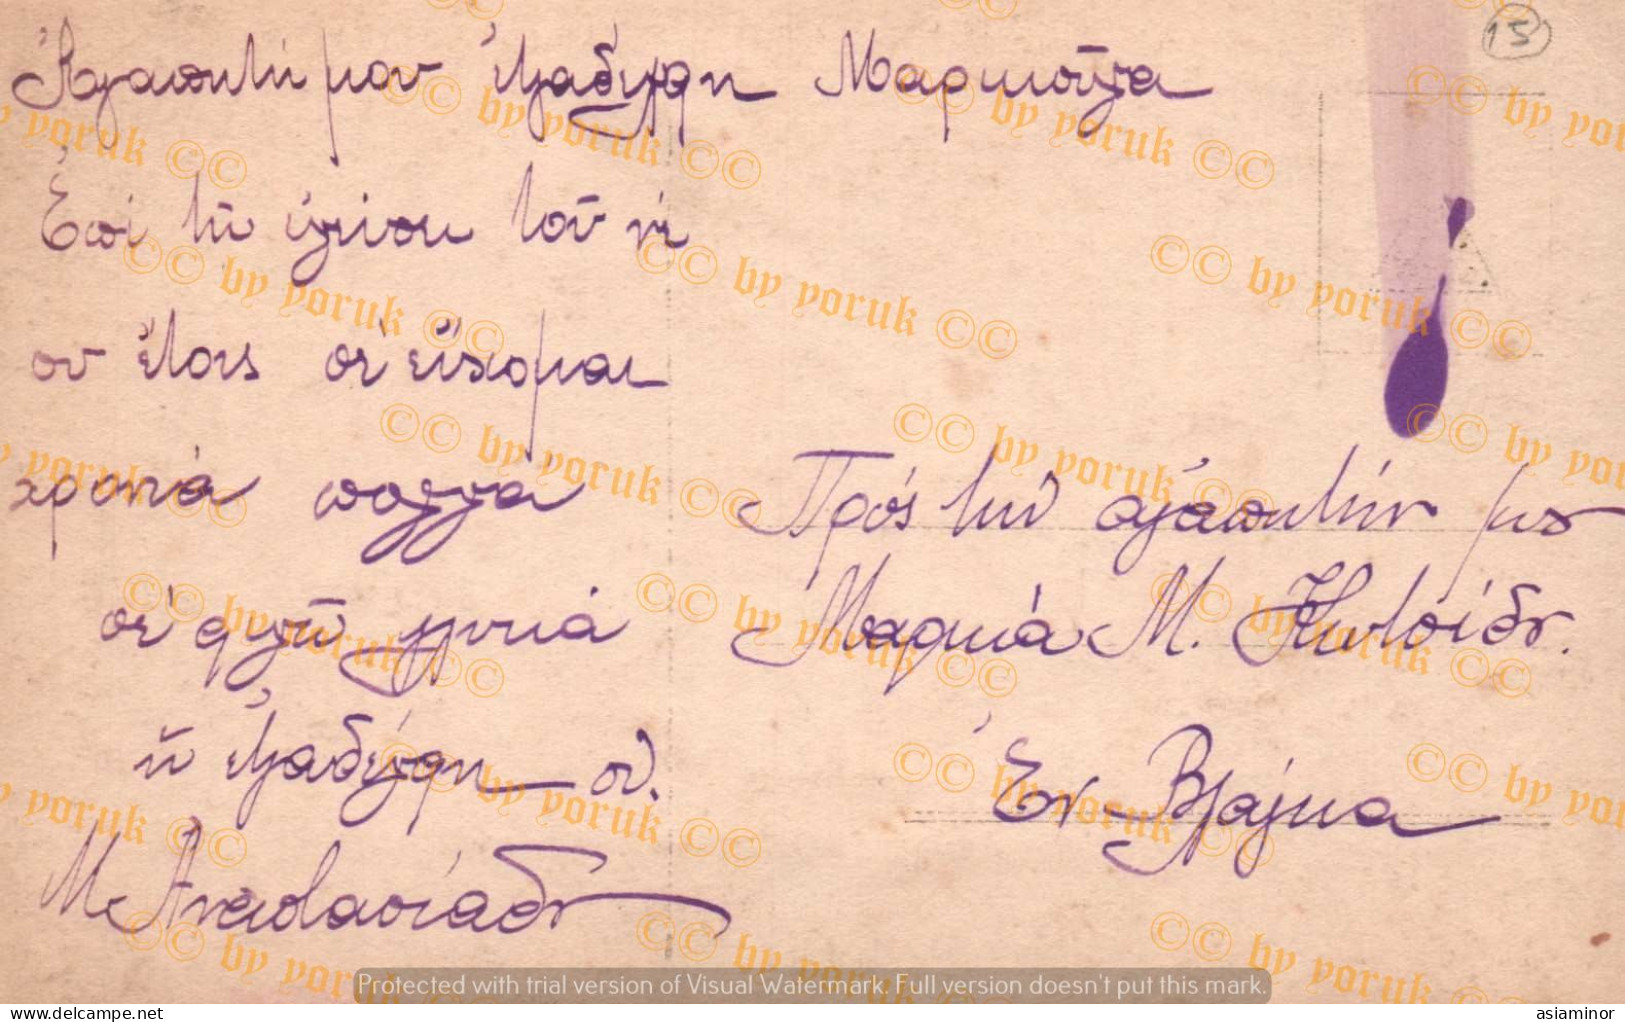 Postcard - 1920/30 - 9x14 Cm. | Fancy. Beautiful Woman Hugging The Cross. - Written In Greek On The Back. * - Femmes